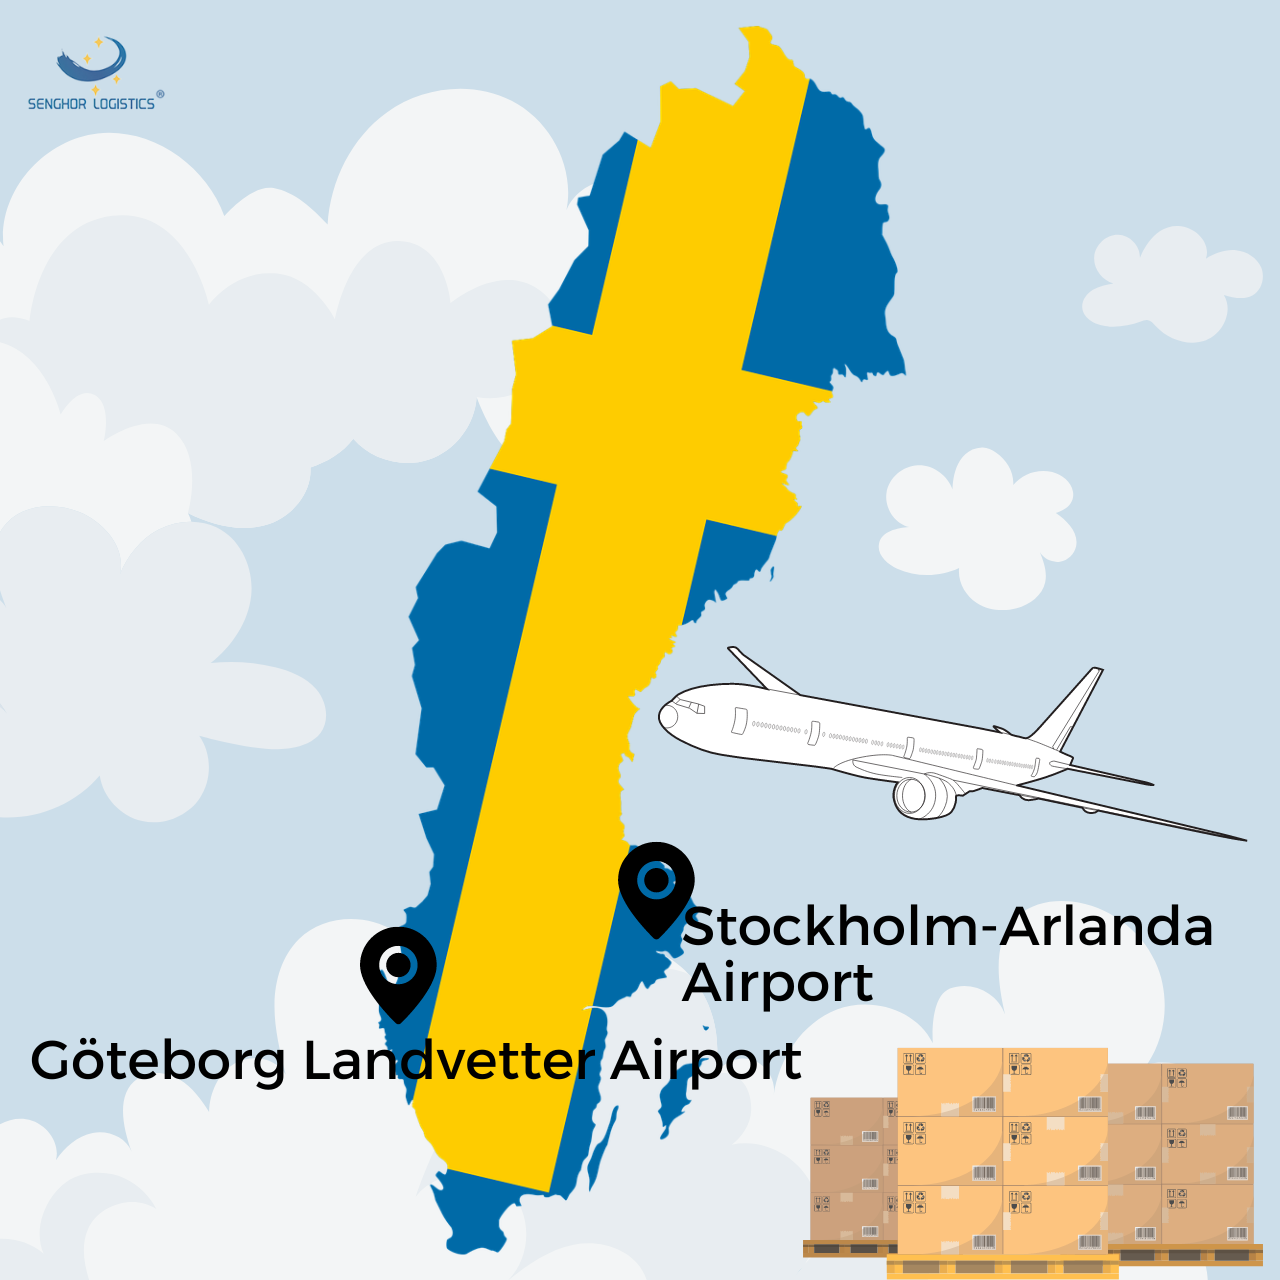 zračni prijevoz tereta iz Kine u Švedsku od strane senghor logistics